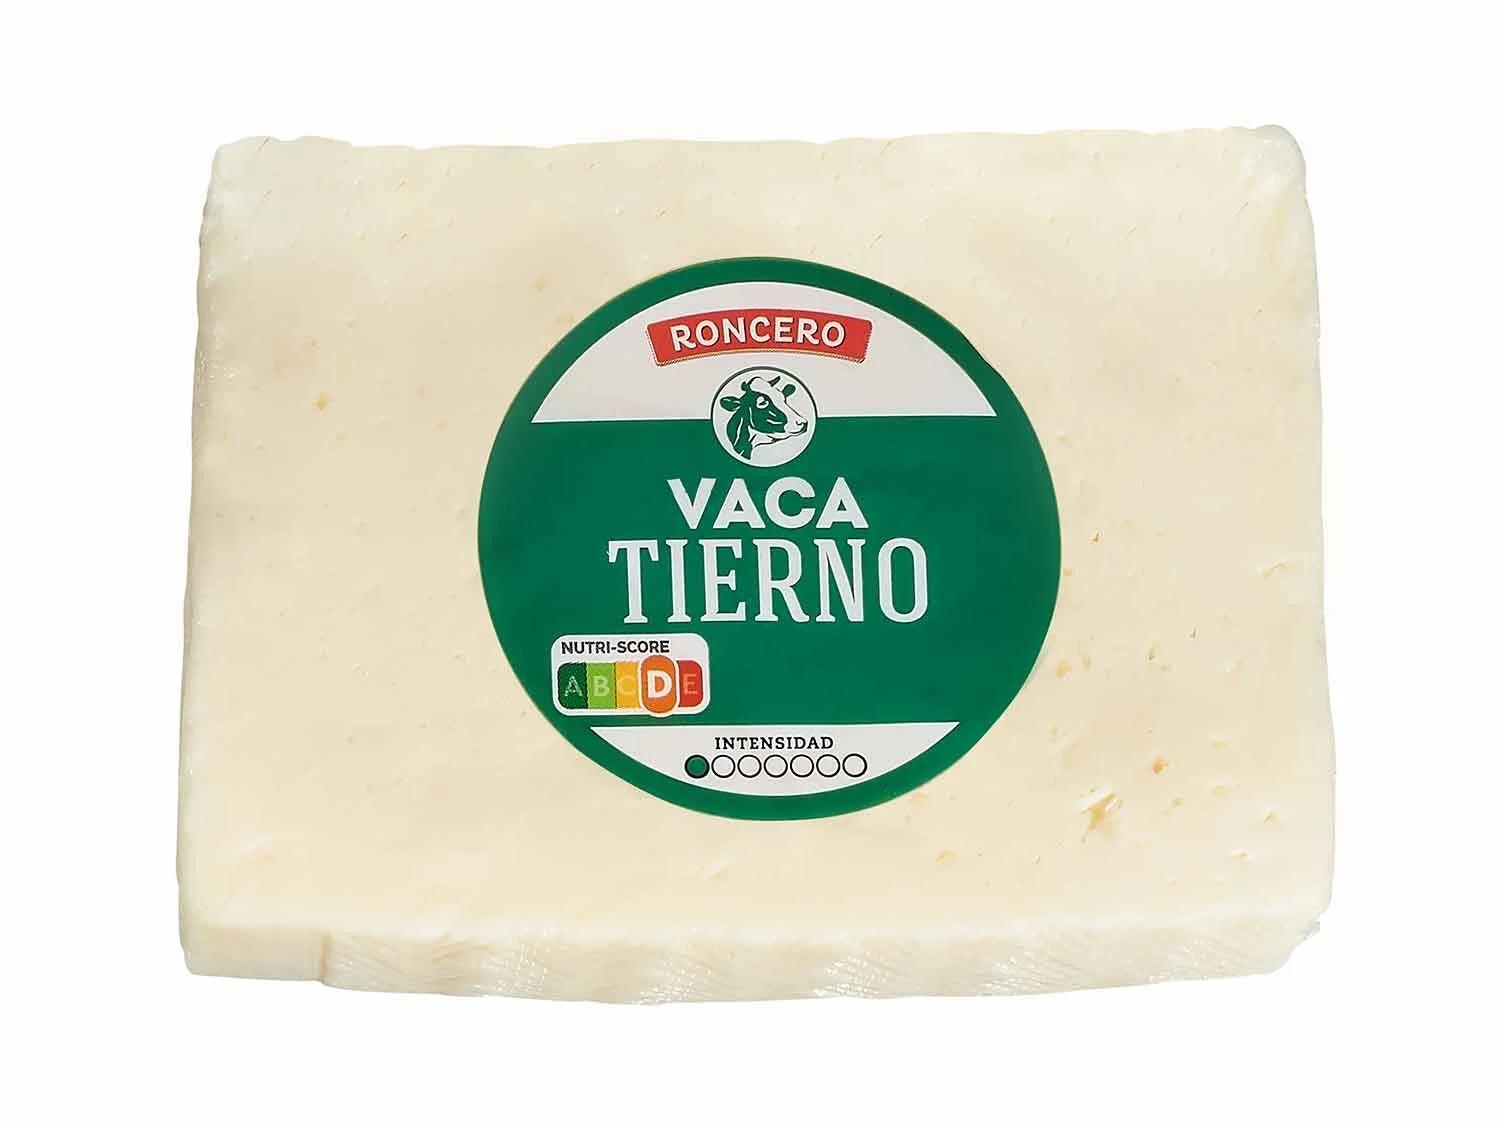 queso de vaca lidl - Cuánto pesa un queso de vaca